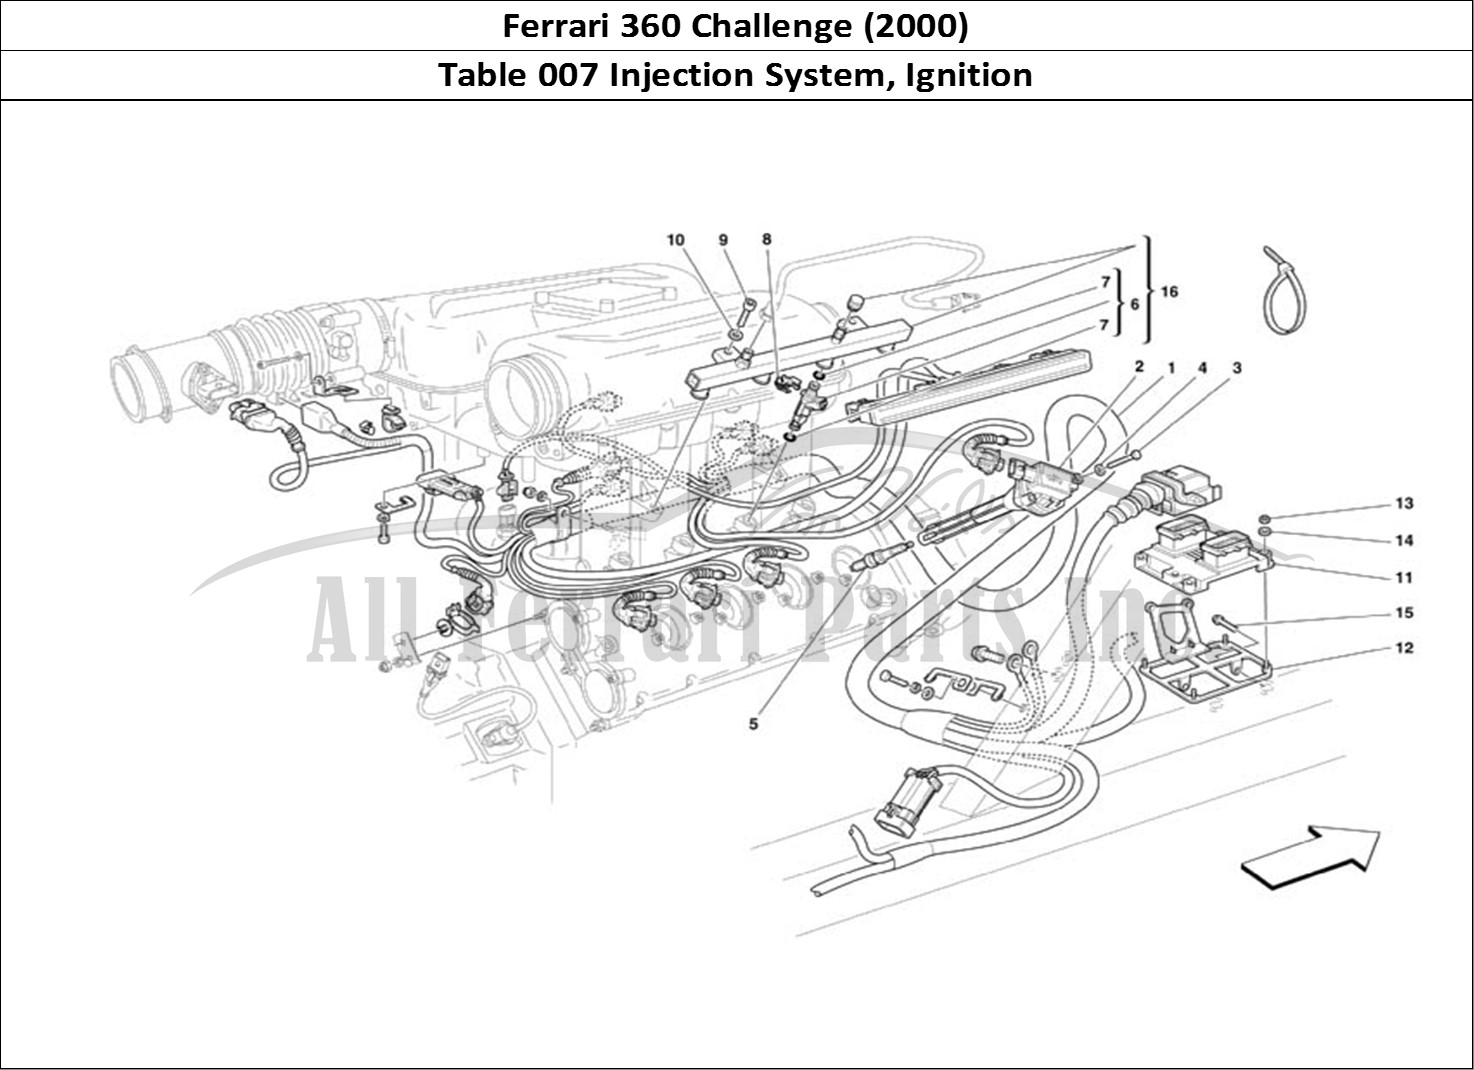 Ferrari Parts Ferrari 360 Challenge (2000) Page 007 Injection Device - Igniti